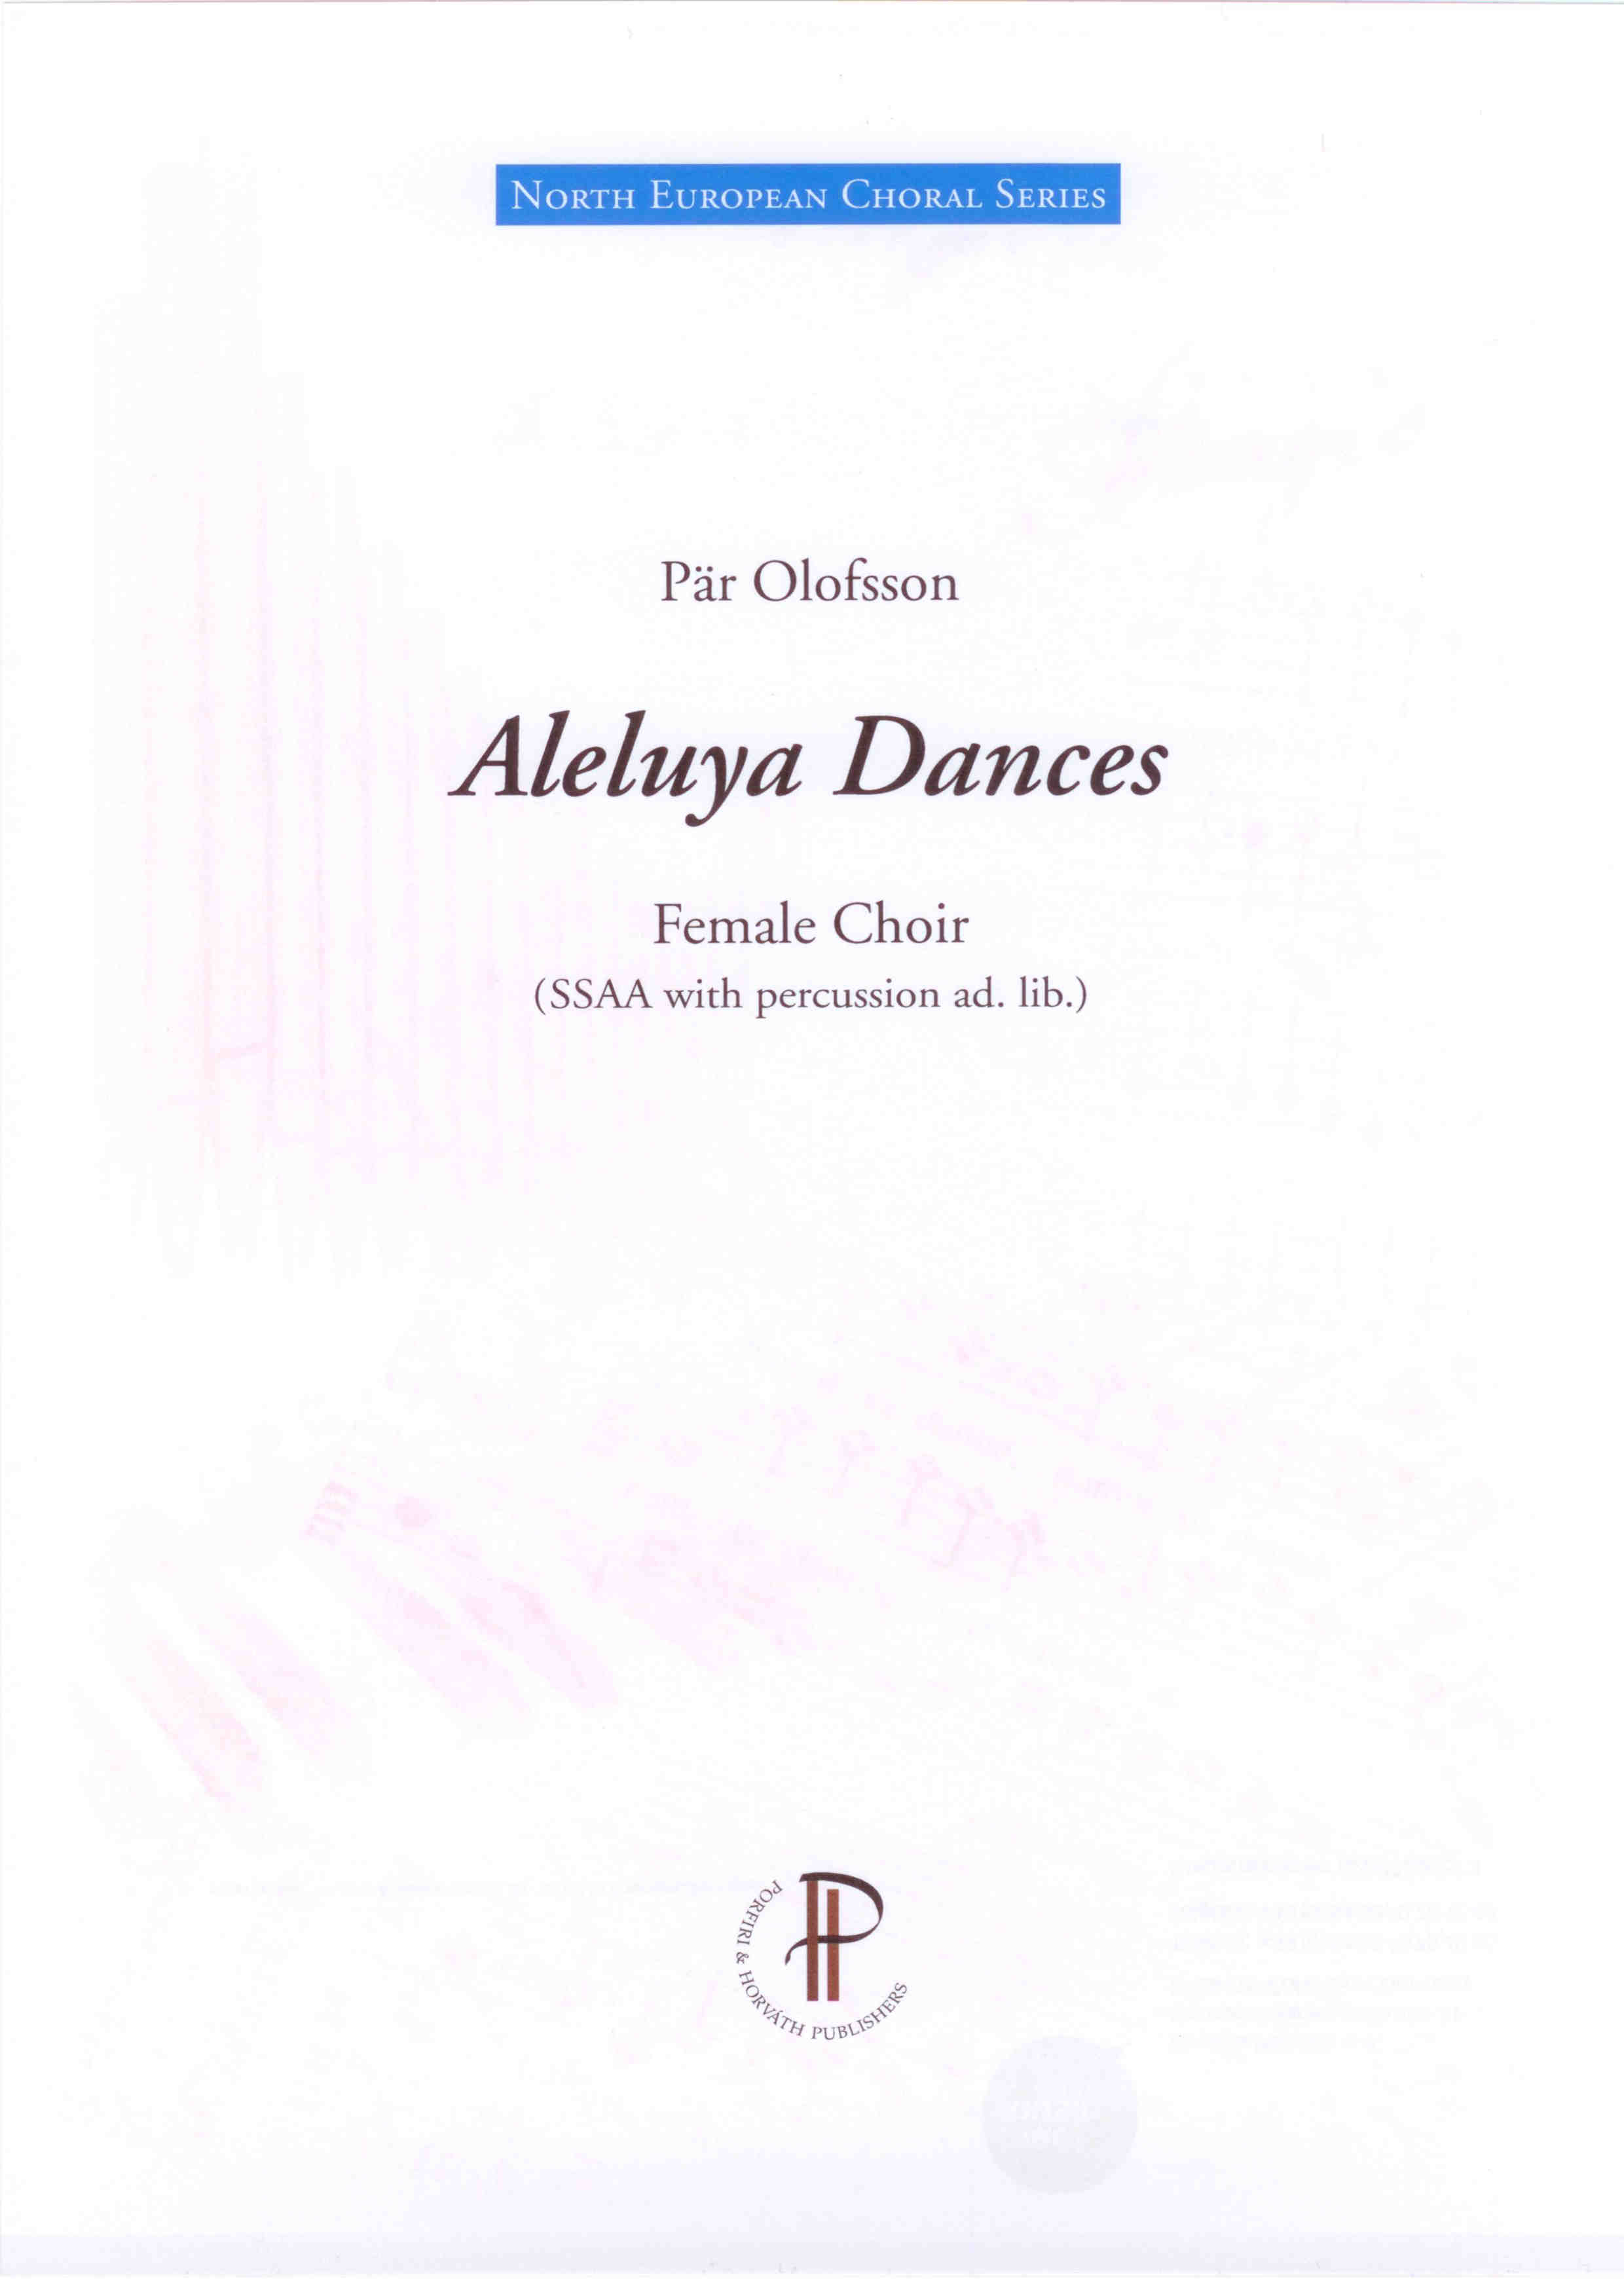 Aleluya dances